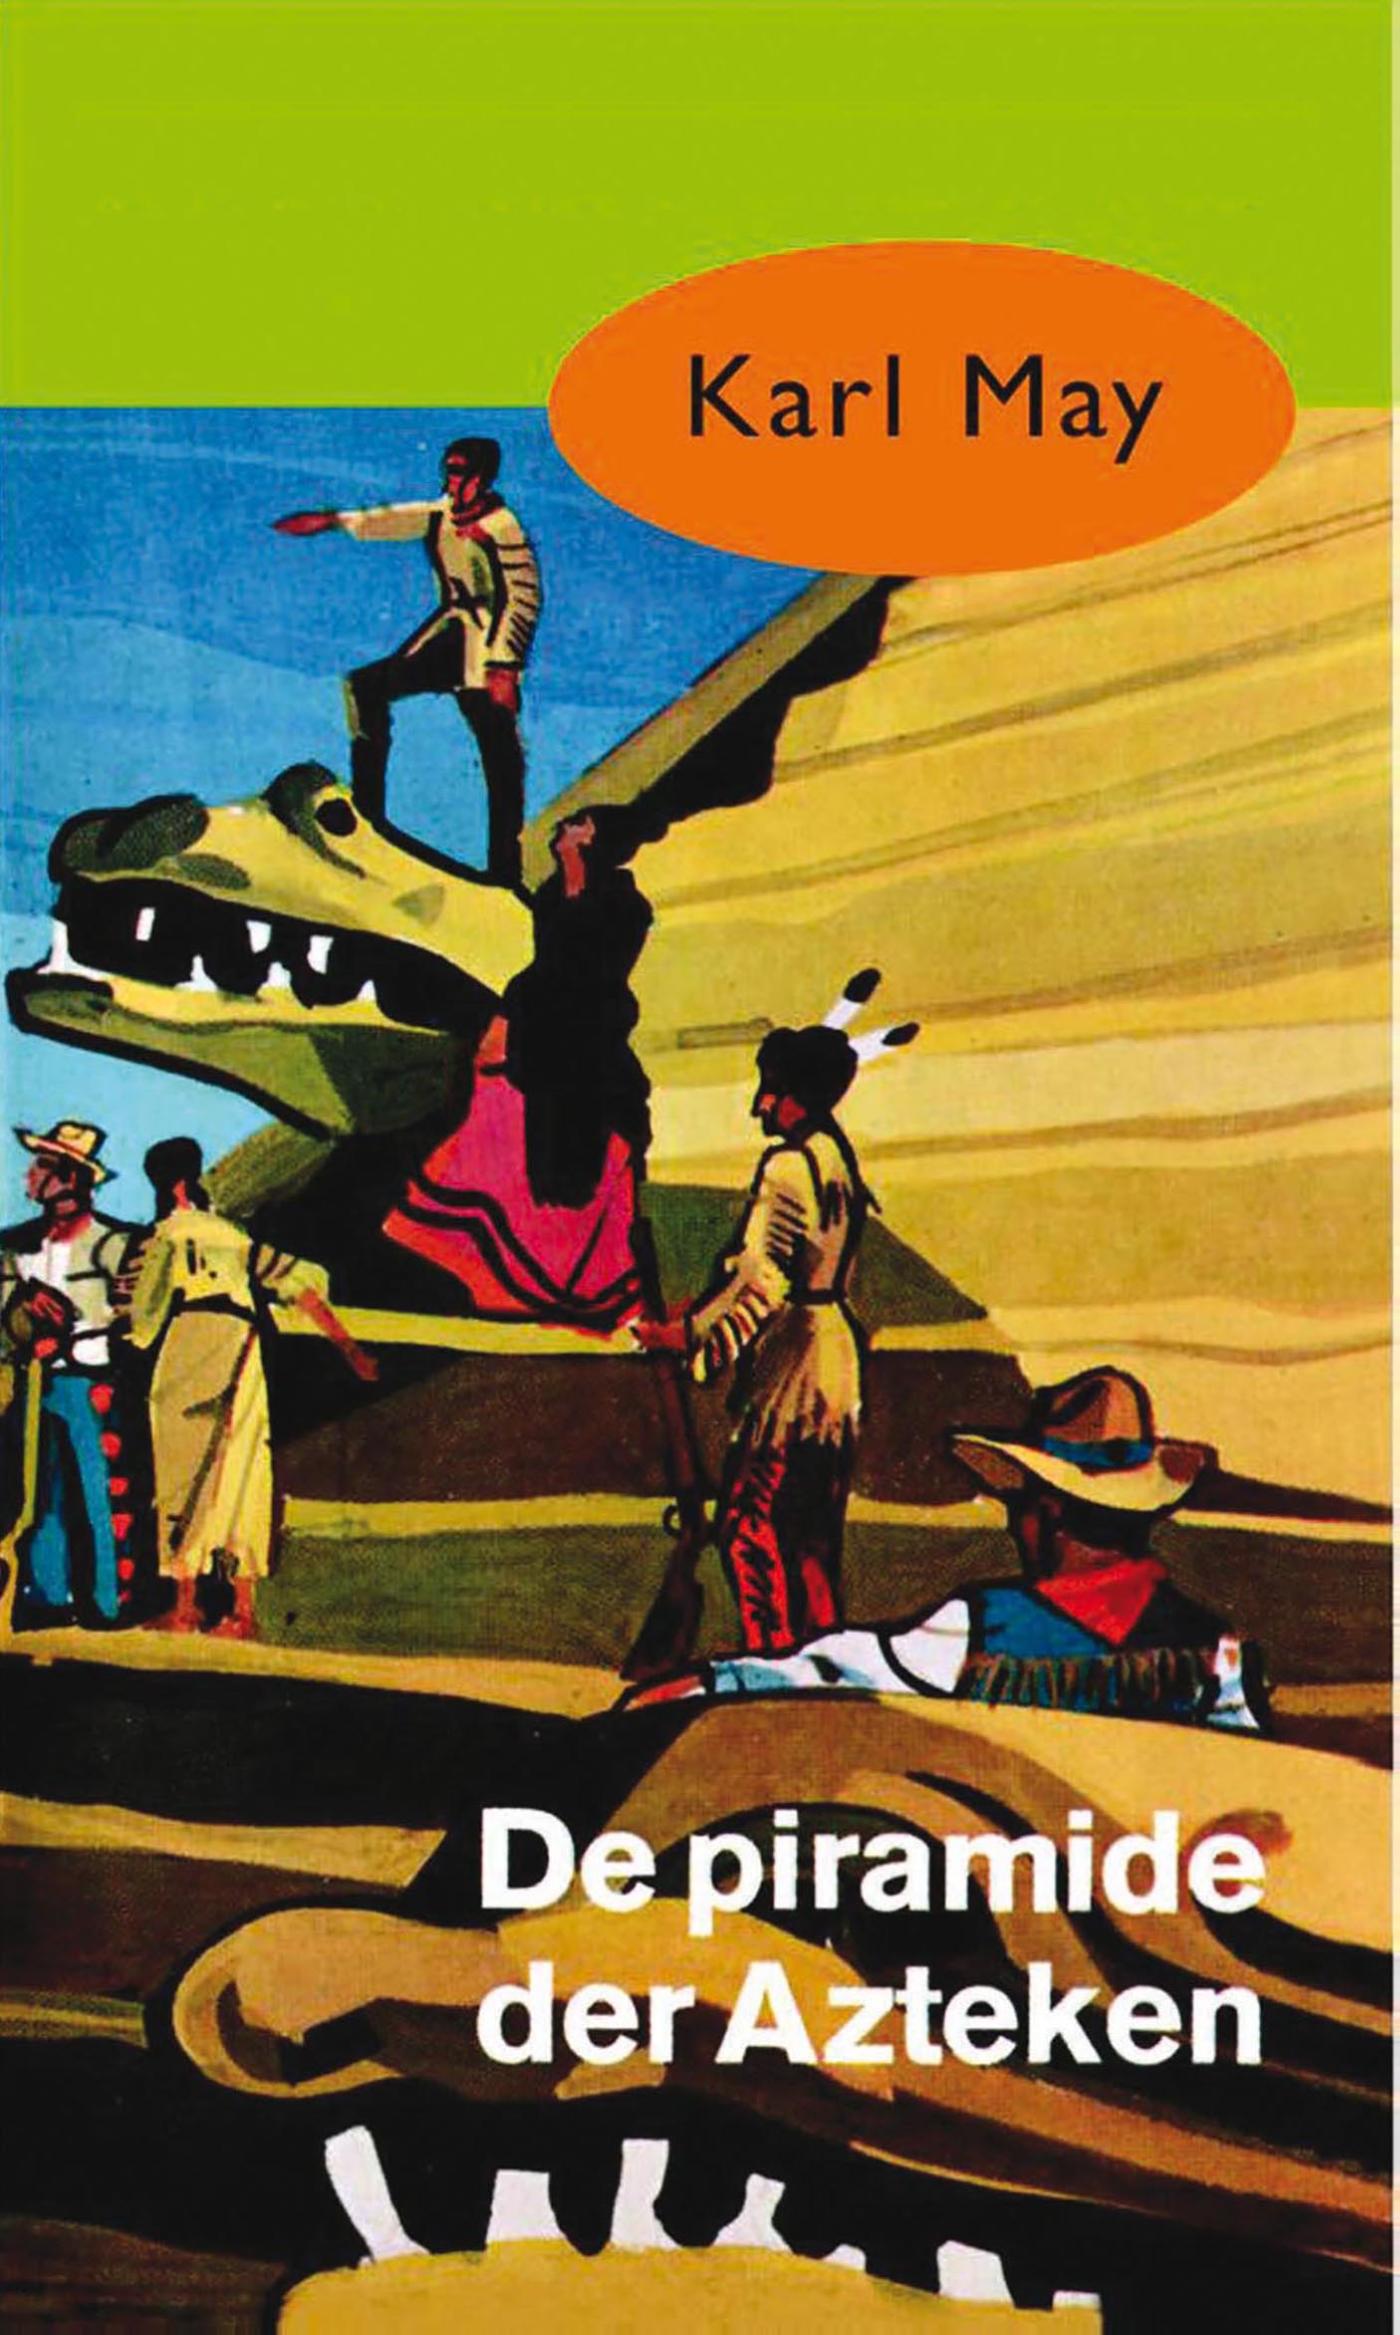 De piramide der Azteken (Ebook)